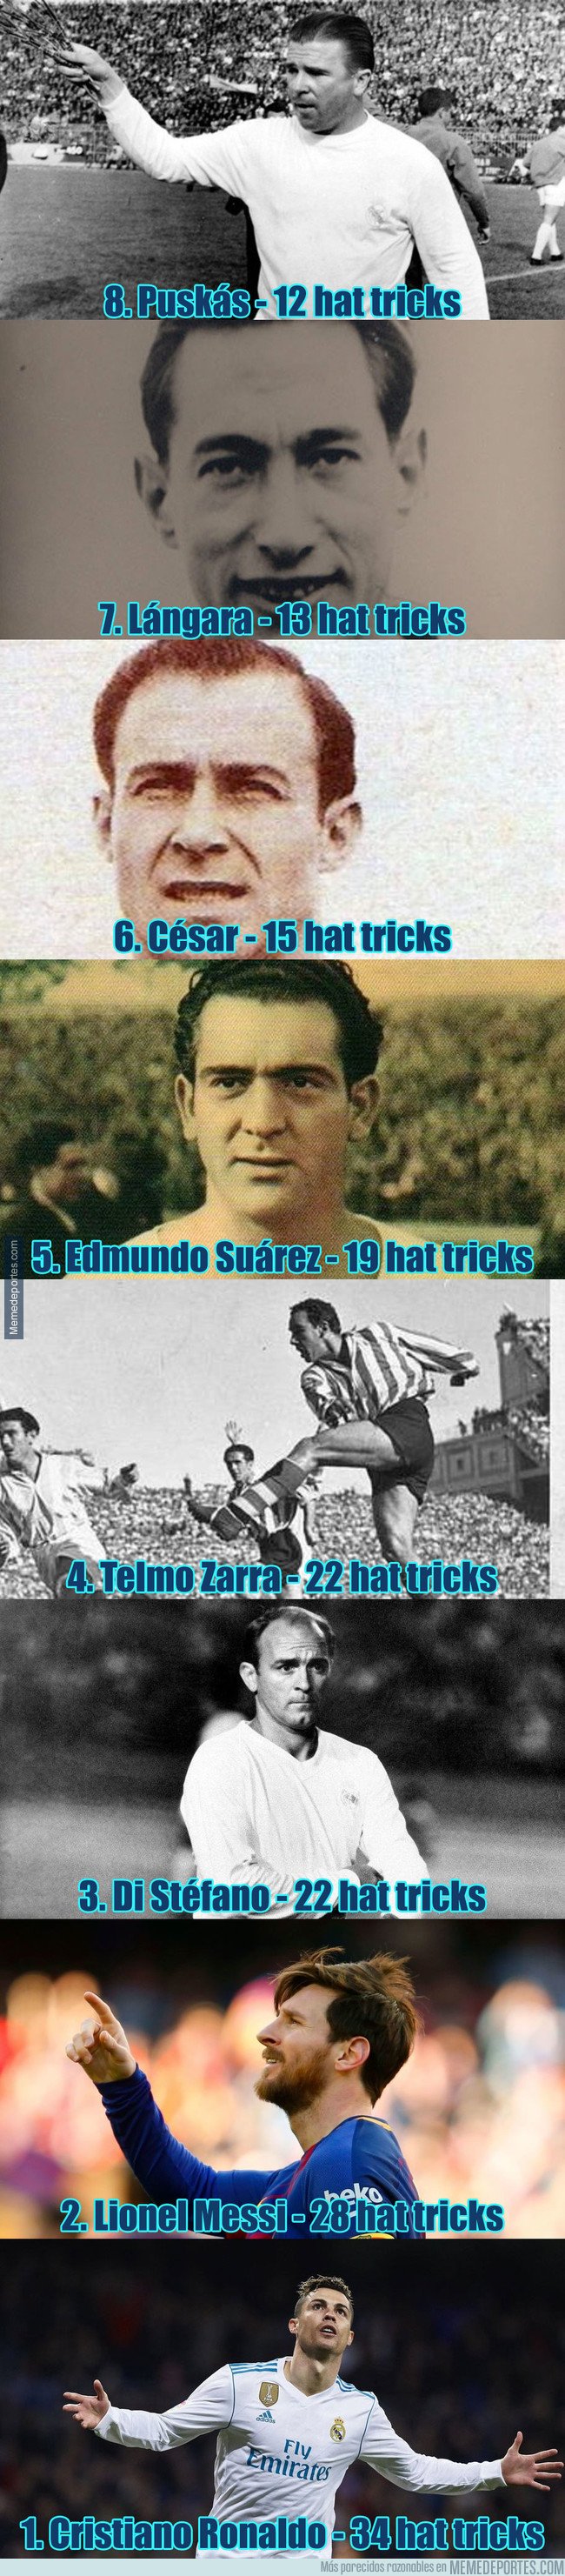 1026311 - Los 8 jugadores con más hat tricks en la historia de LaLiga